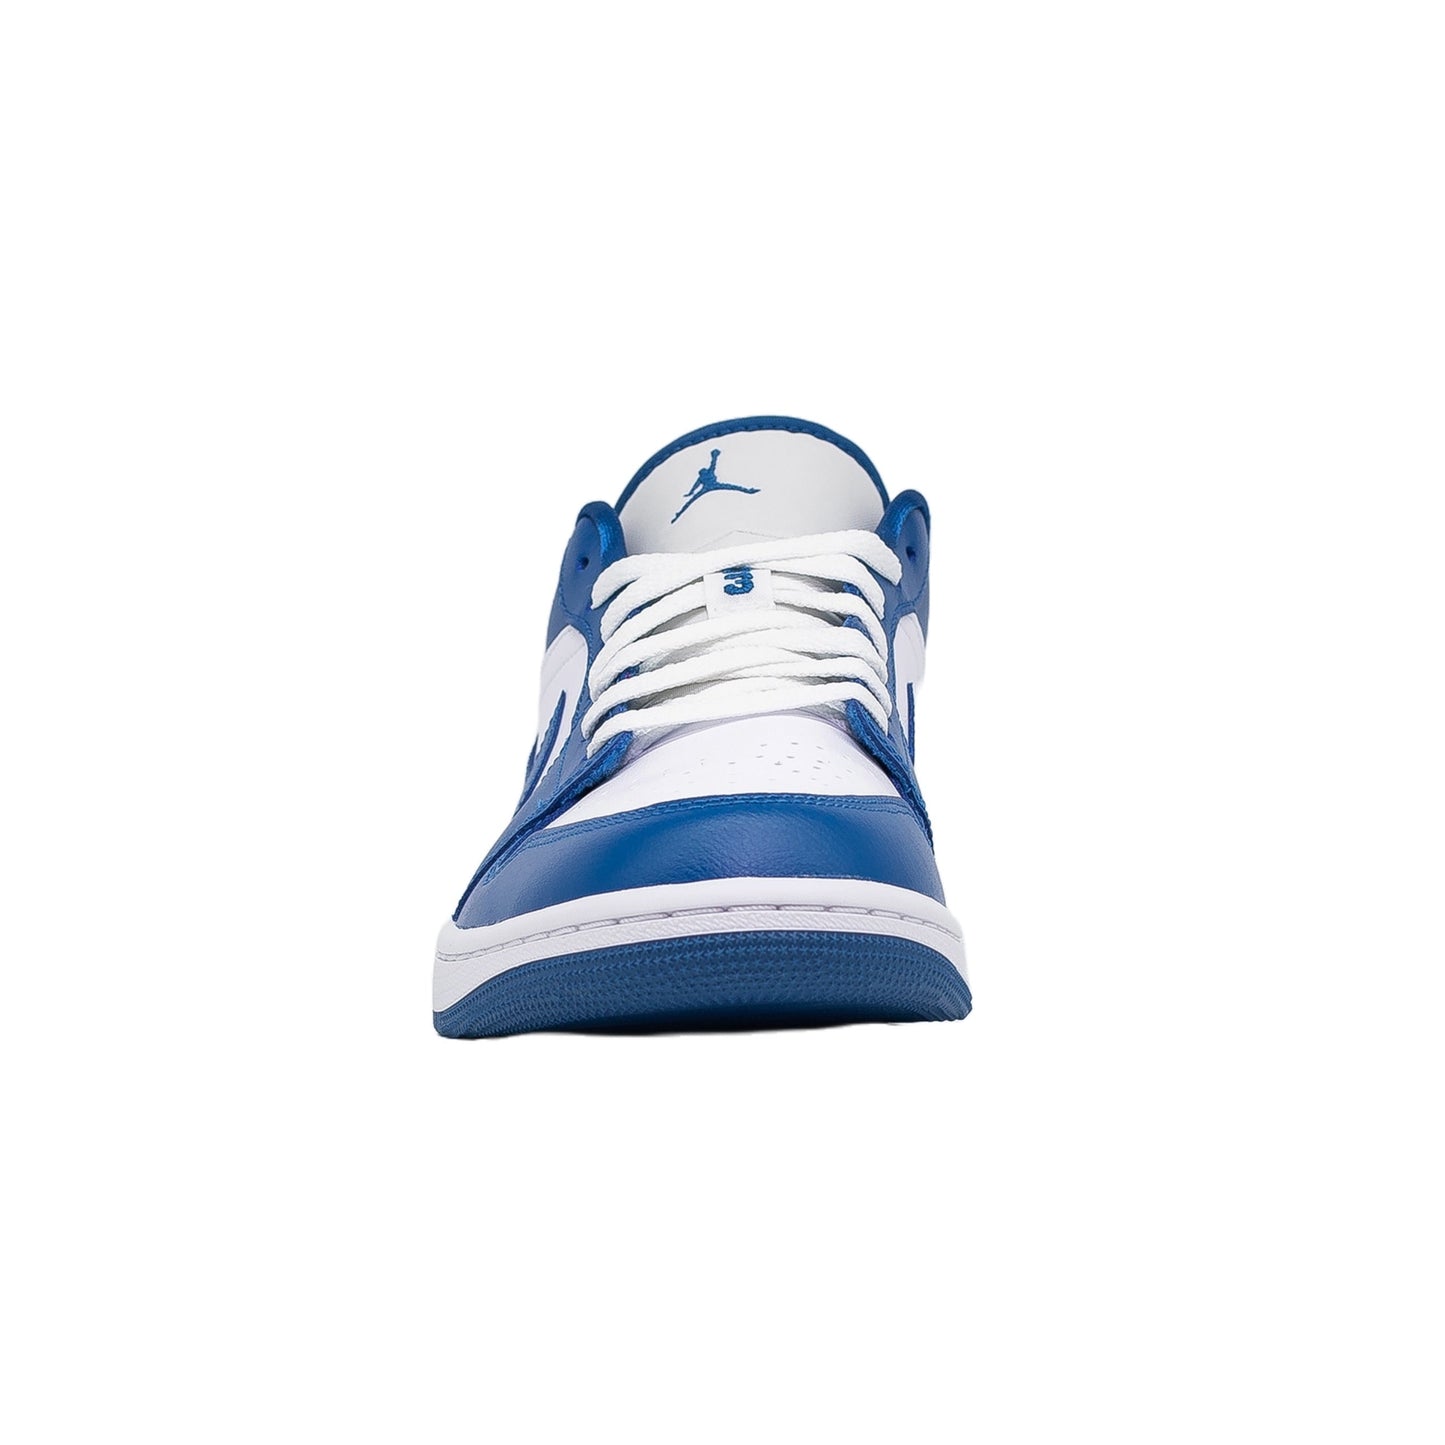 Women's Air Travis Scott × Nike Air Jordan 1 Low "Reverse Mocha Sail and Ridgerock" DM7866-162, Marina Blue